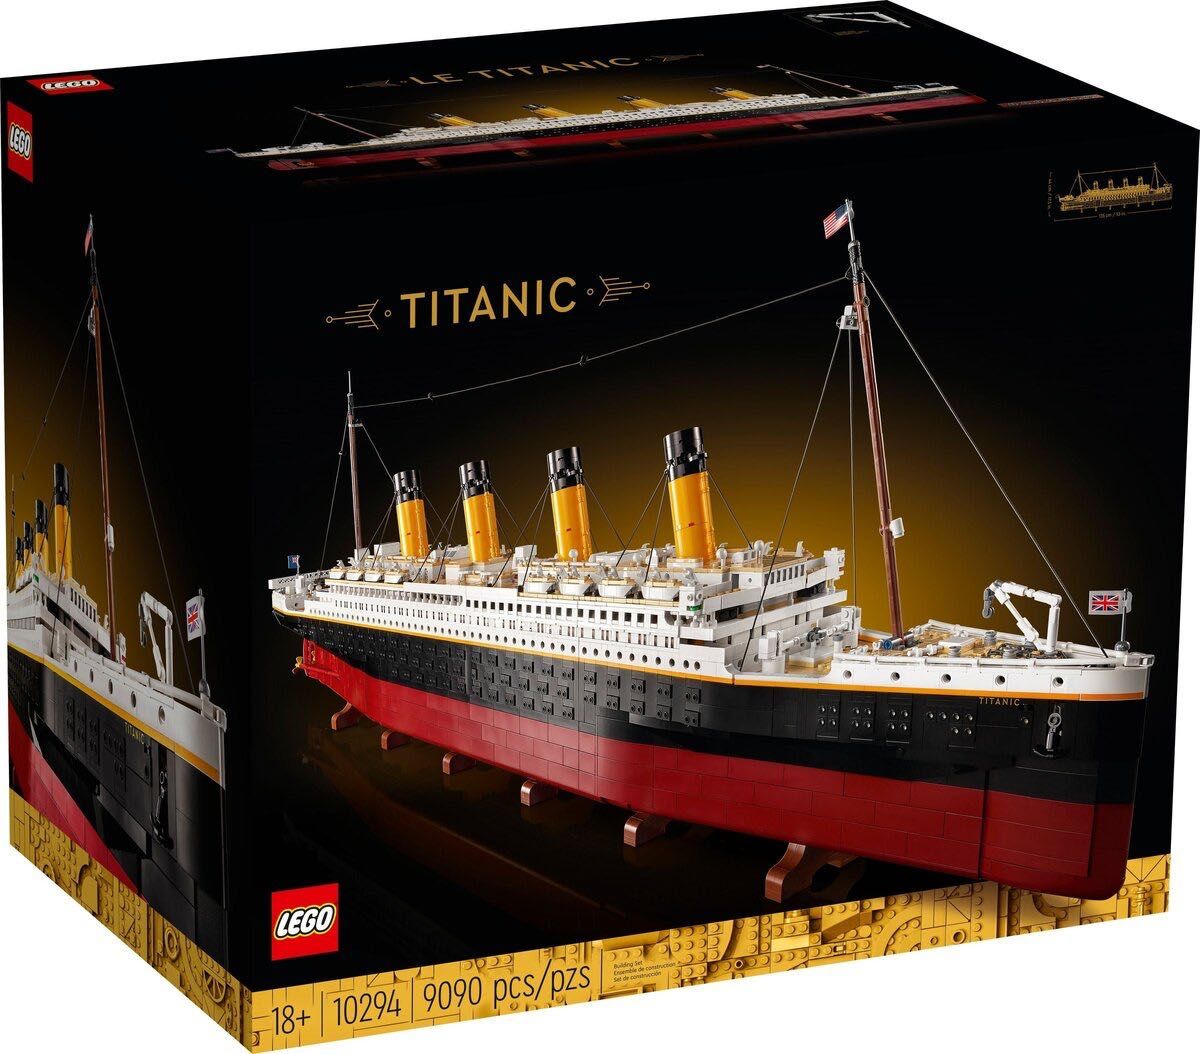 LEGO Titanic / конструктор ЛЕГО Титанік 10294.18+